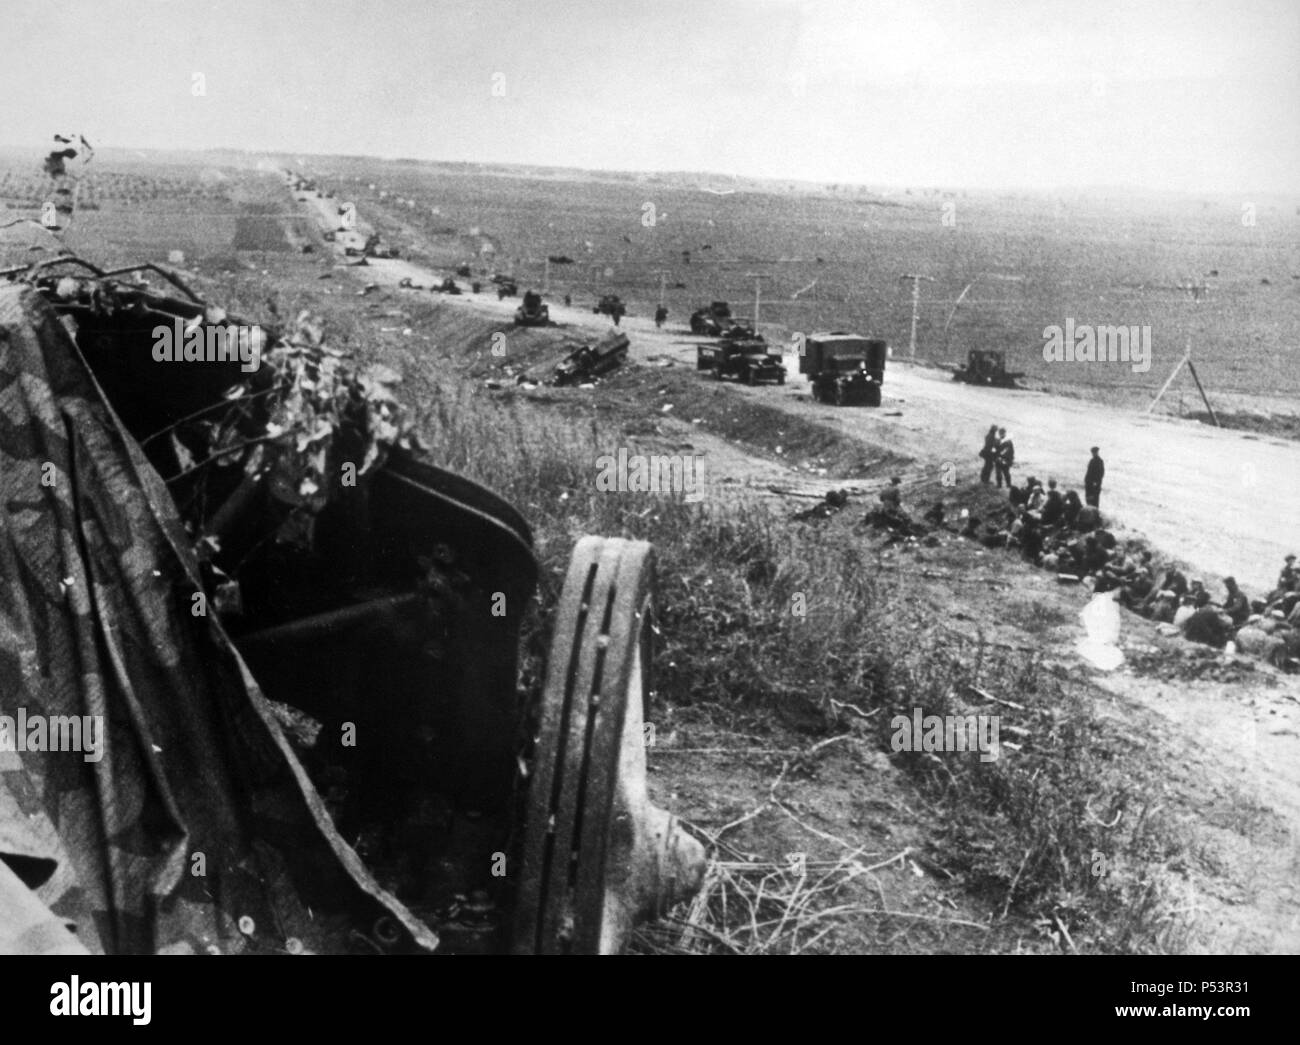 SEGUNDA GUERRA MUNDIAL (1939-1945) - Batalla de Moscú 1941-42. La carretera de Minskal en la URSS sembrada de vehículos soviéticos destruidos y abandonados en la retirada. Stock Photo